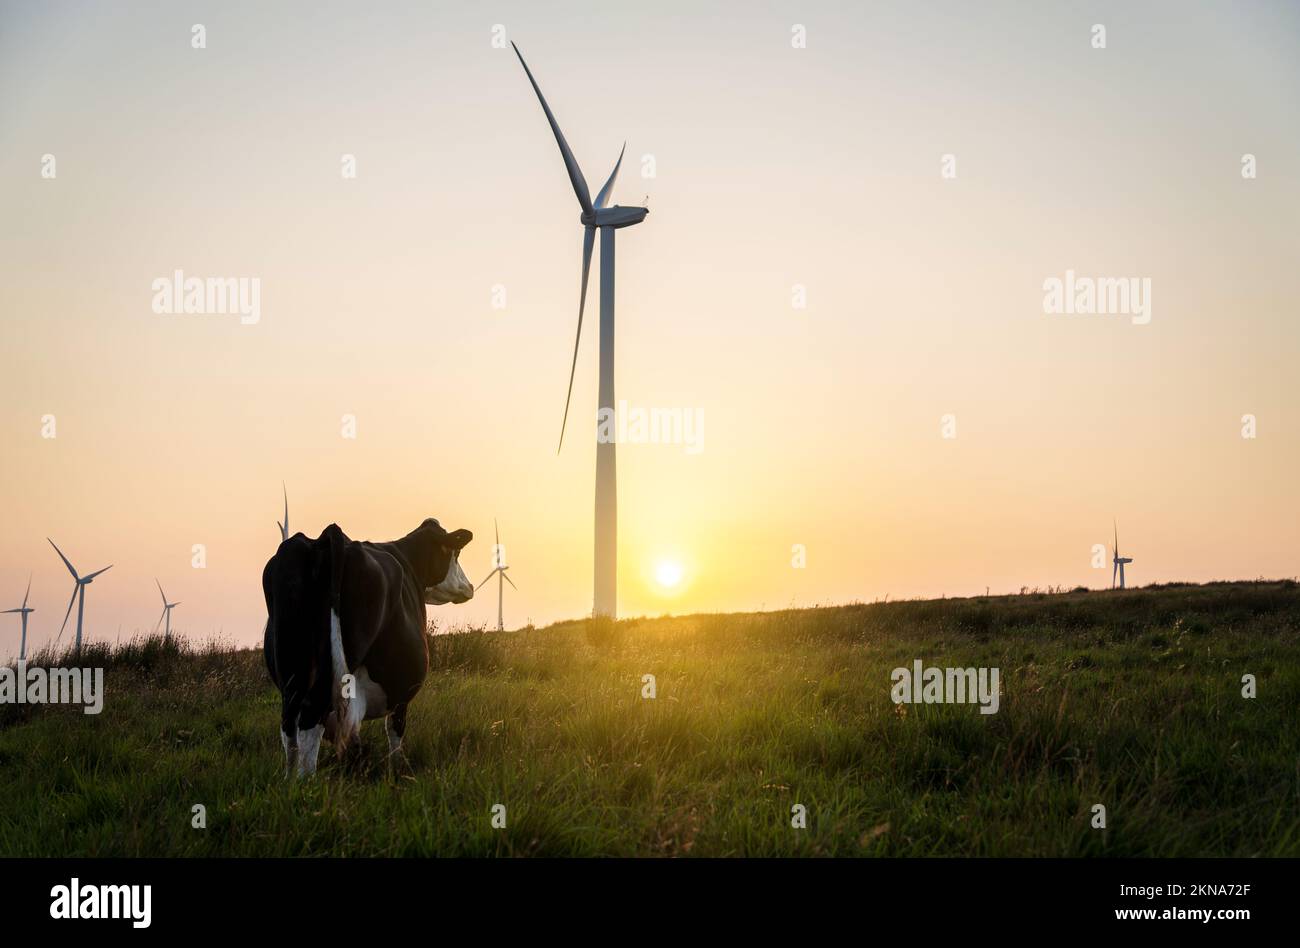 Mucca e turbine eoliche al tramonto. Le turbine interessano il bestiame e l'agricoltura, l'energia eolica e l'agricoltura, i problemi ambientali, gli impatti ambientali dei bovini da latte, il concetto di sostenibilità. Foto Stock